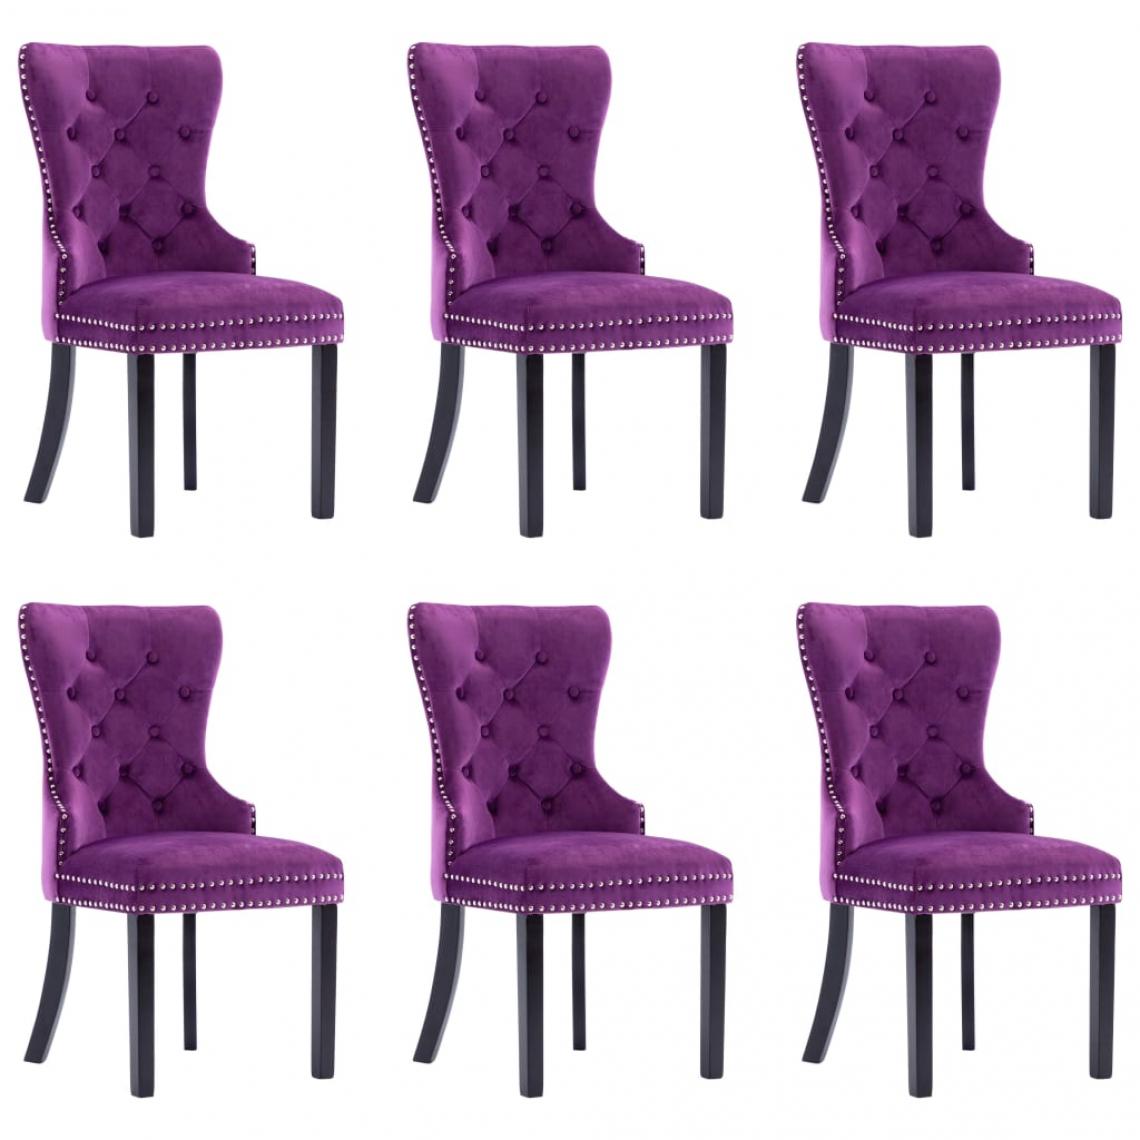 Decoshop26 - Lot de 6 chaises de salle à manger cuisine design classique velours violet CDS022936 - Chaises